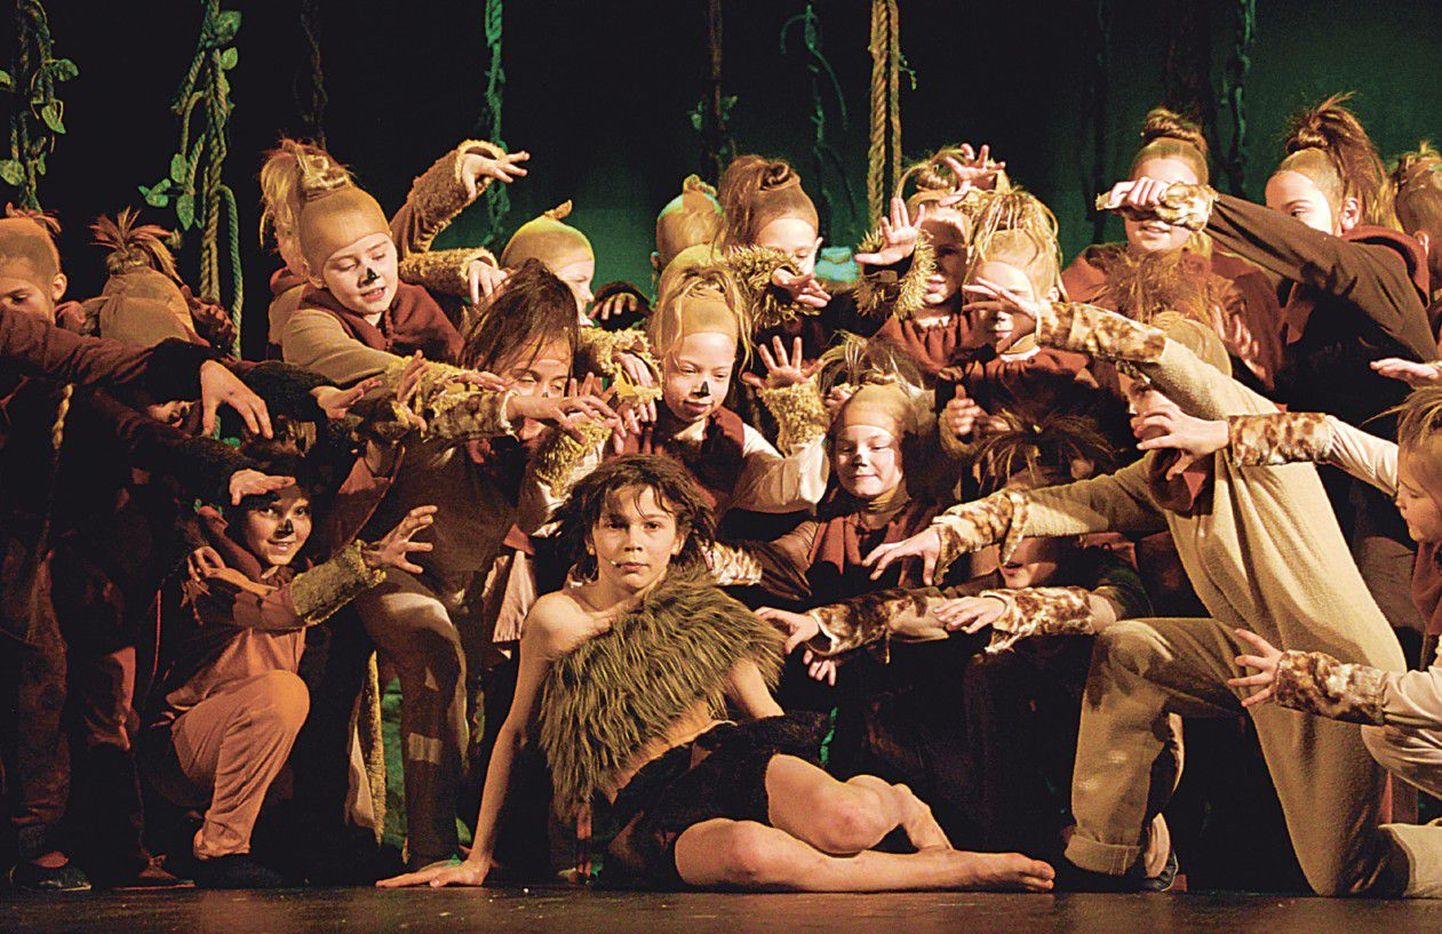 Сцена из мюзикла «Маугли». Исполнитель главной роли Таавет Боровков (в центре) так понравился юным танцовщицам из студии «Визави», что после спектакля в знак своей симпатии они подарили ему шоколад.